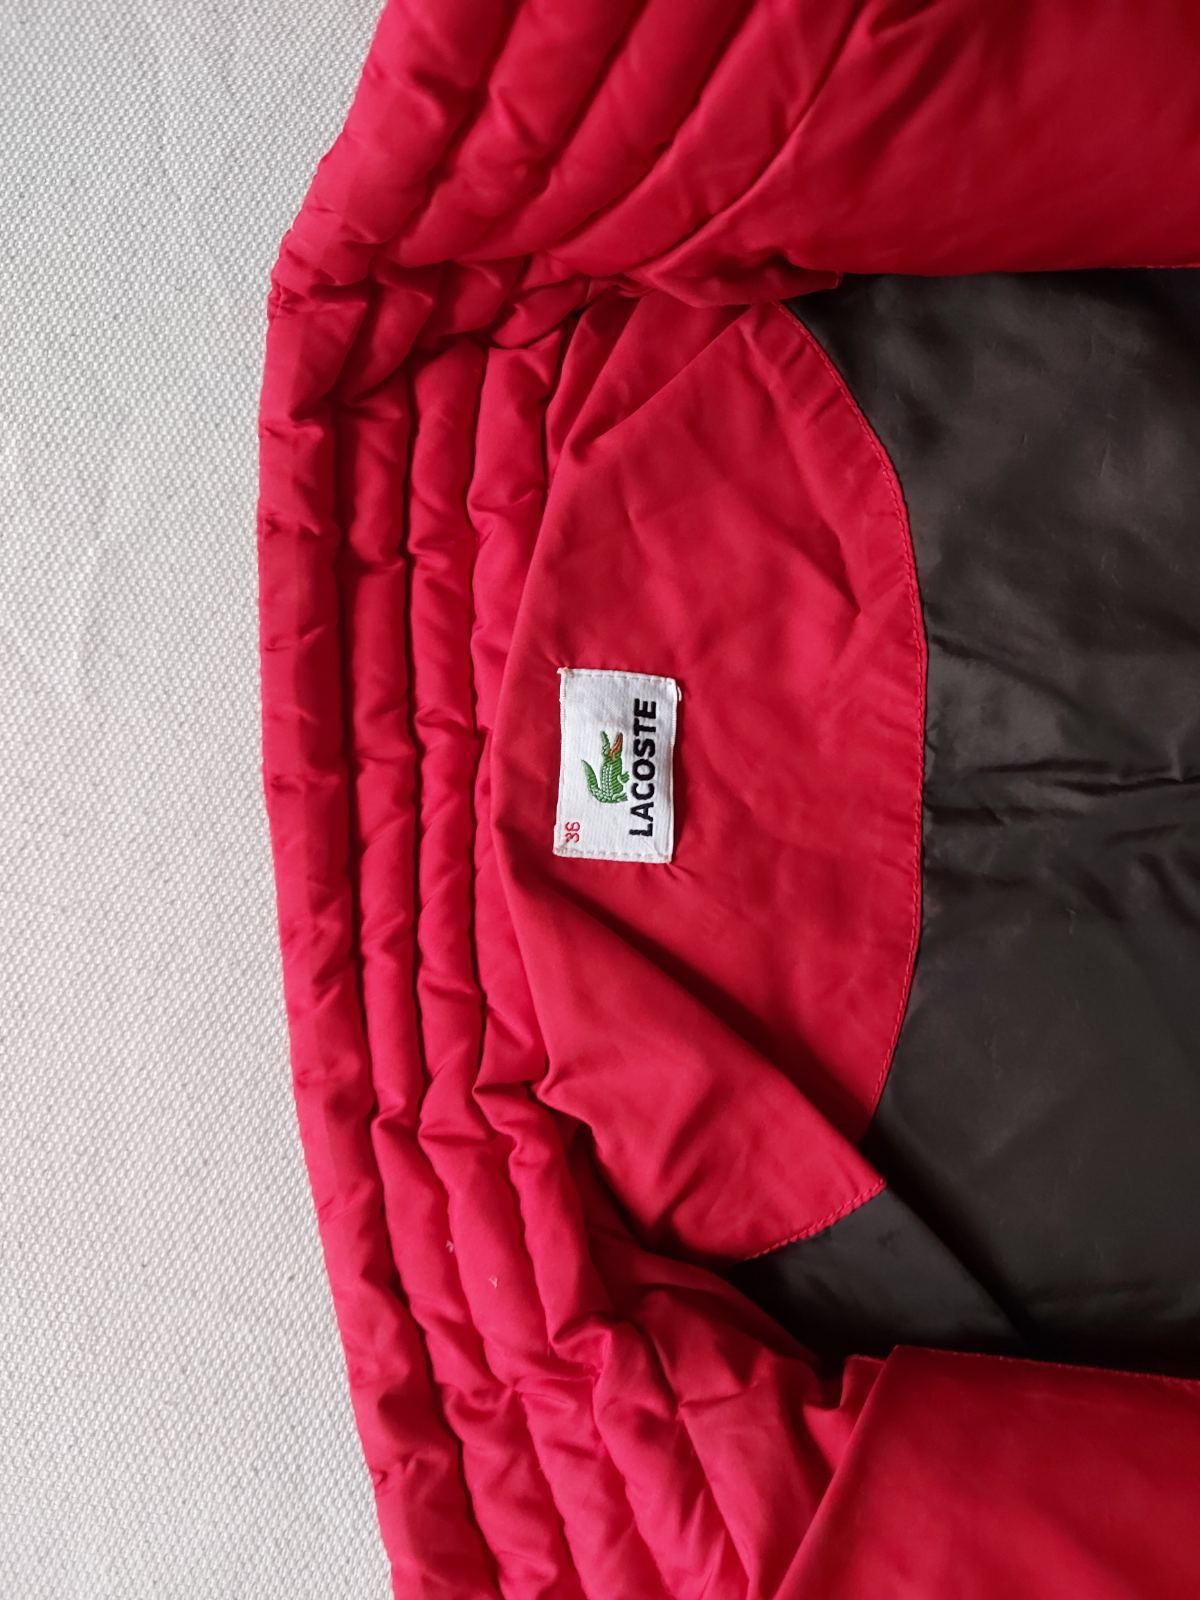 Детско пухено яке, Lacoste, размер 160см, 12-14г.,Женско XS ,червено,